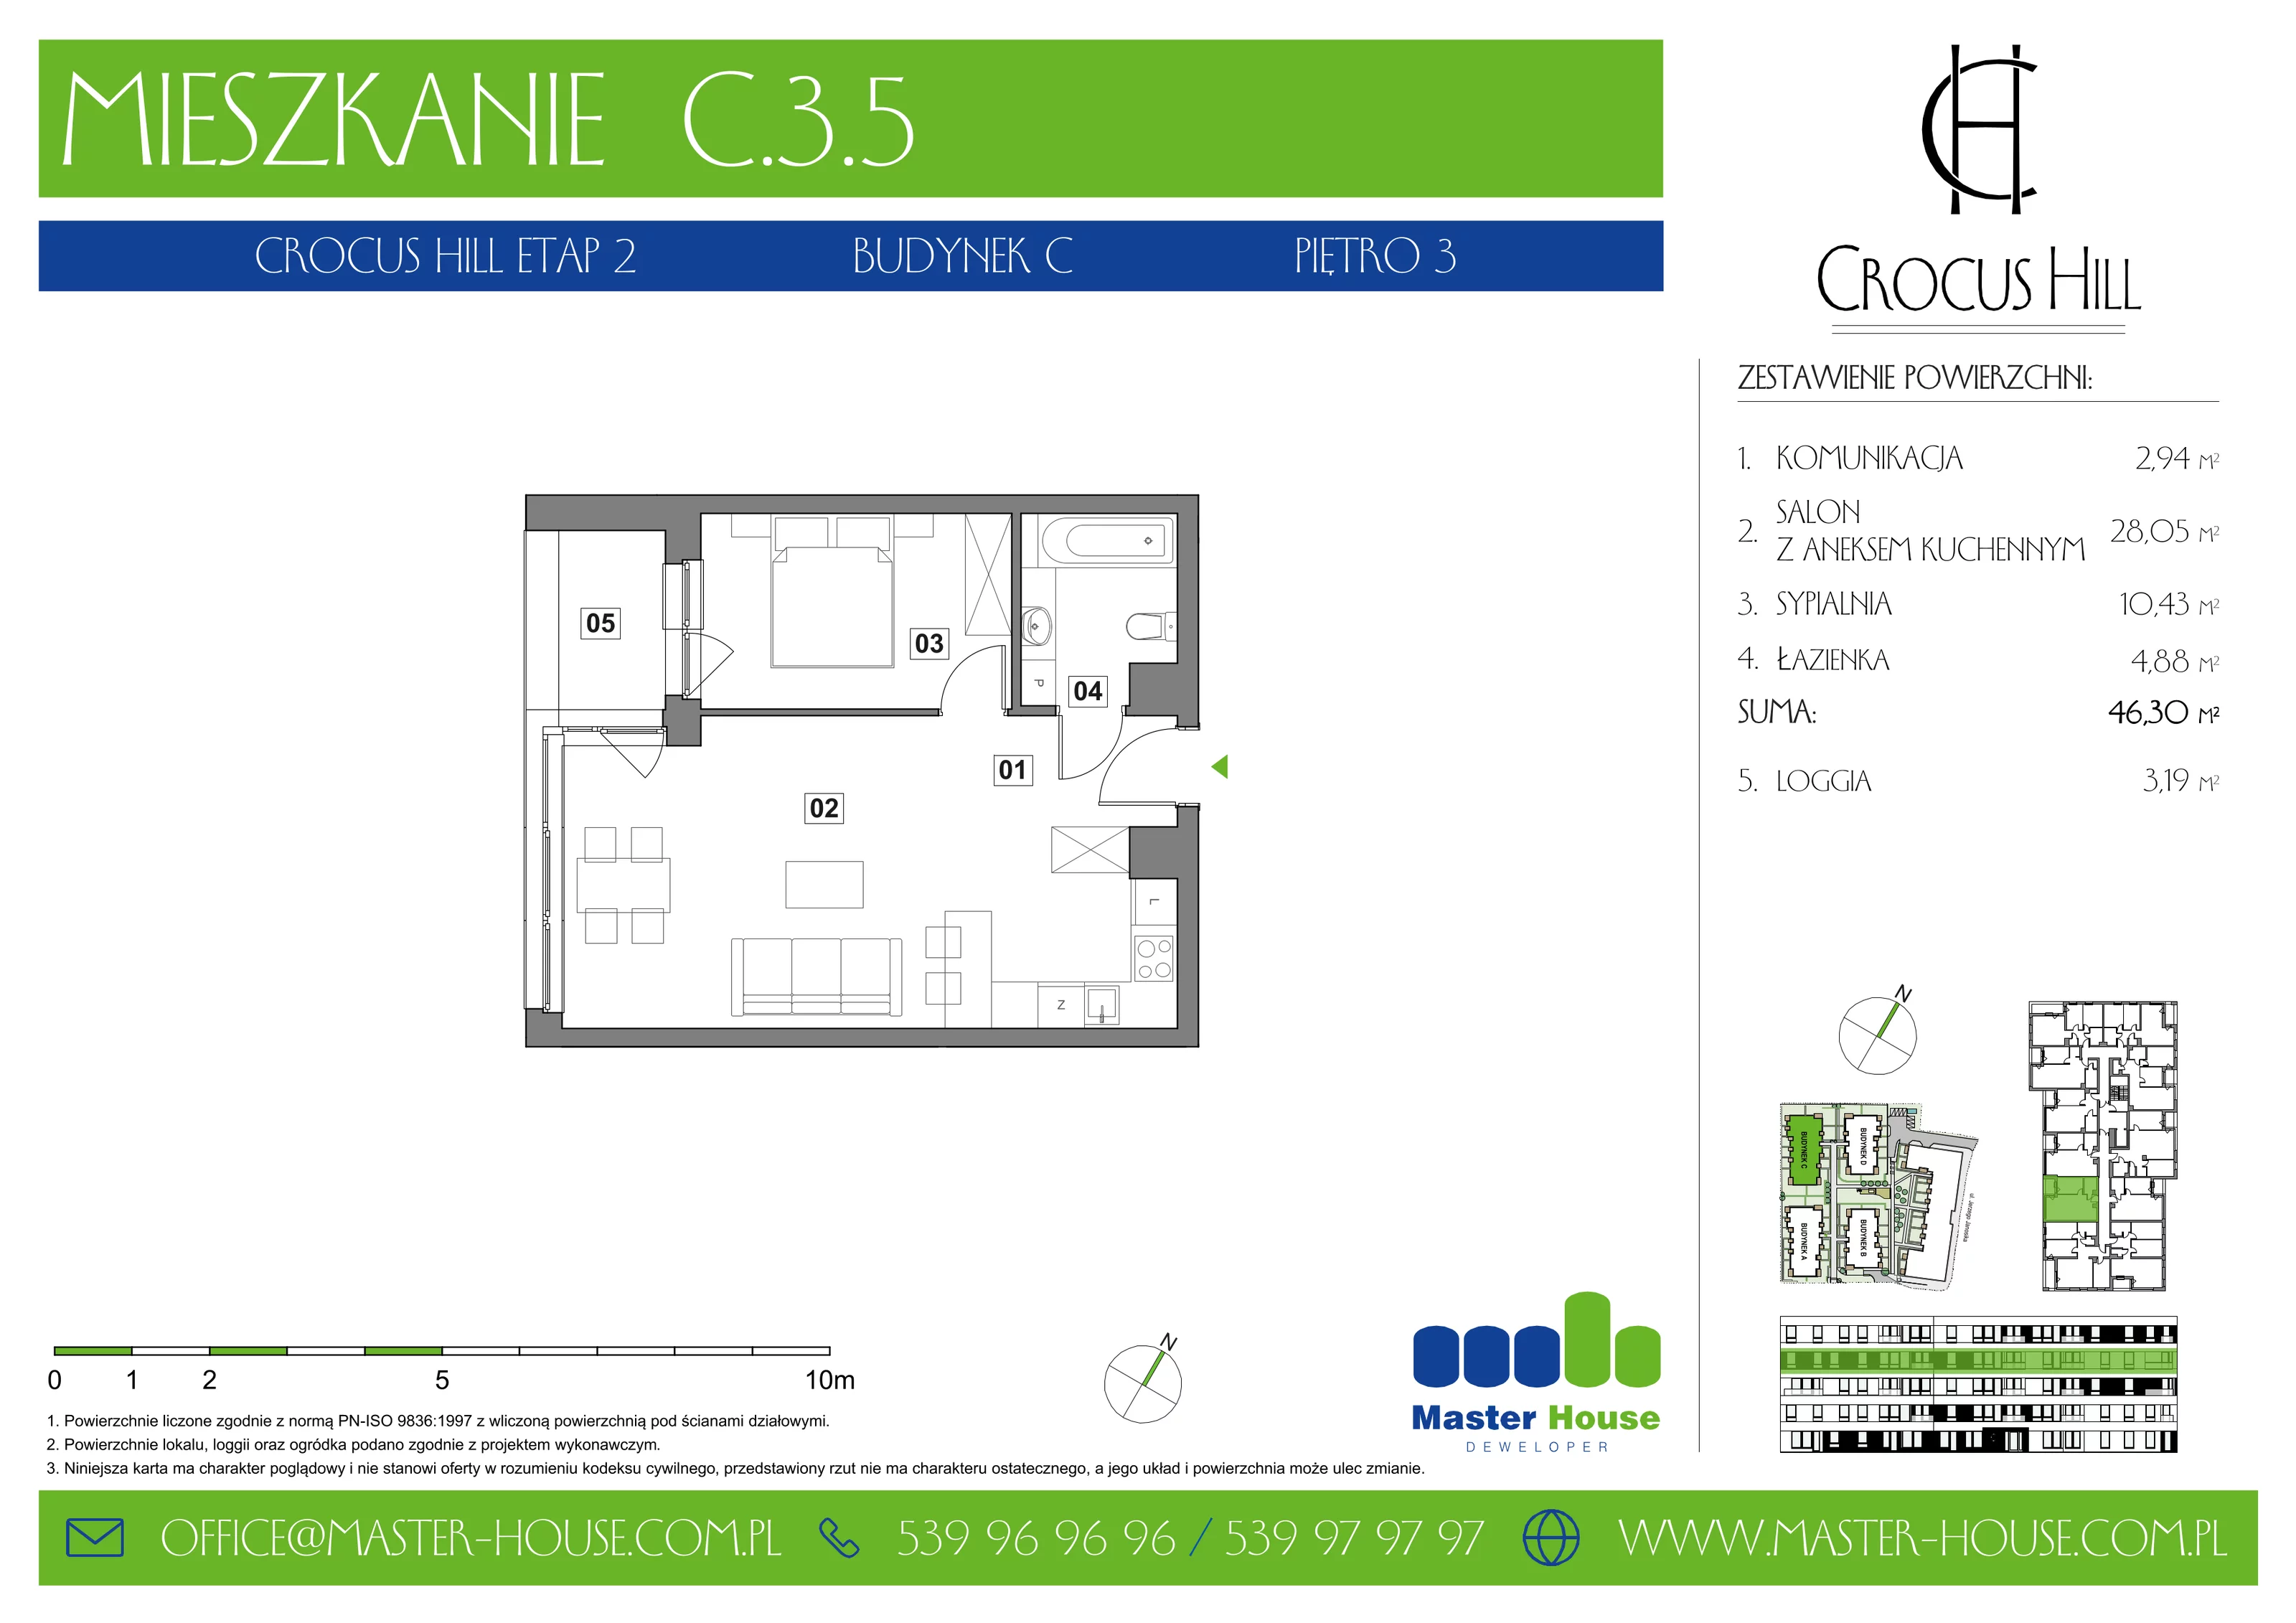 Mieszkanie 46,30 m², piętro 3, oferta nr C.3.5, Crocus Hill, Szczecin, Śródmieście, ul. Jerzego Janosika 2, 2A, 3, 3A